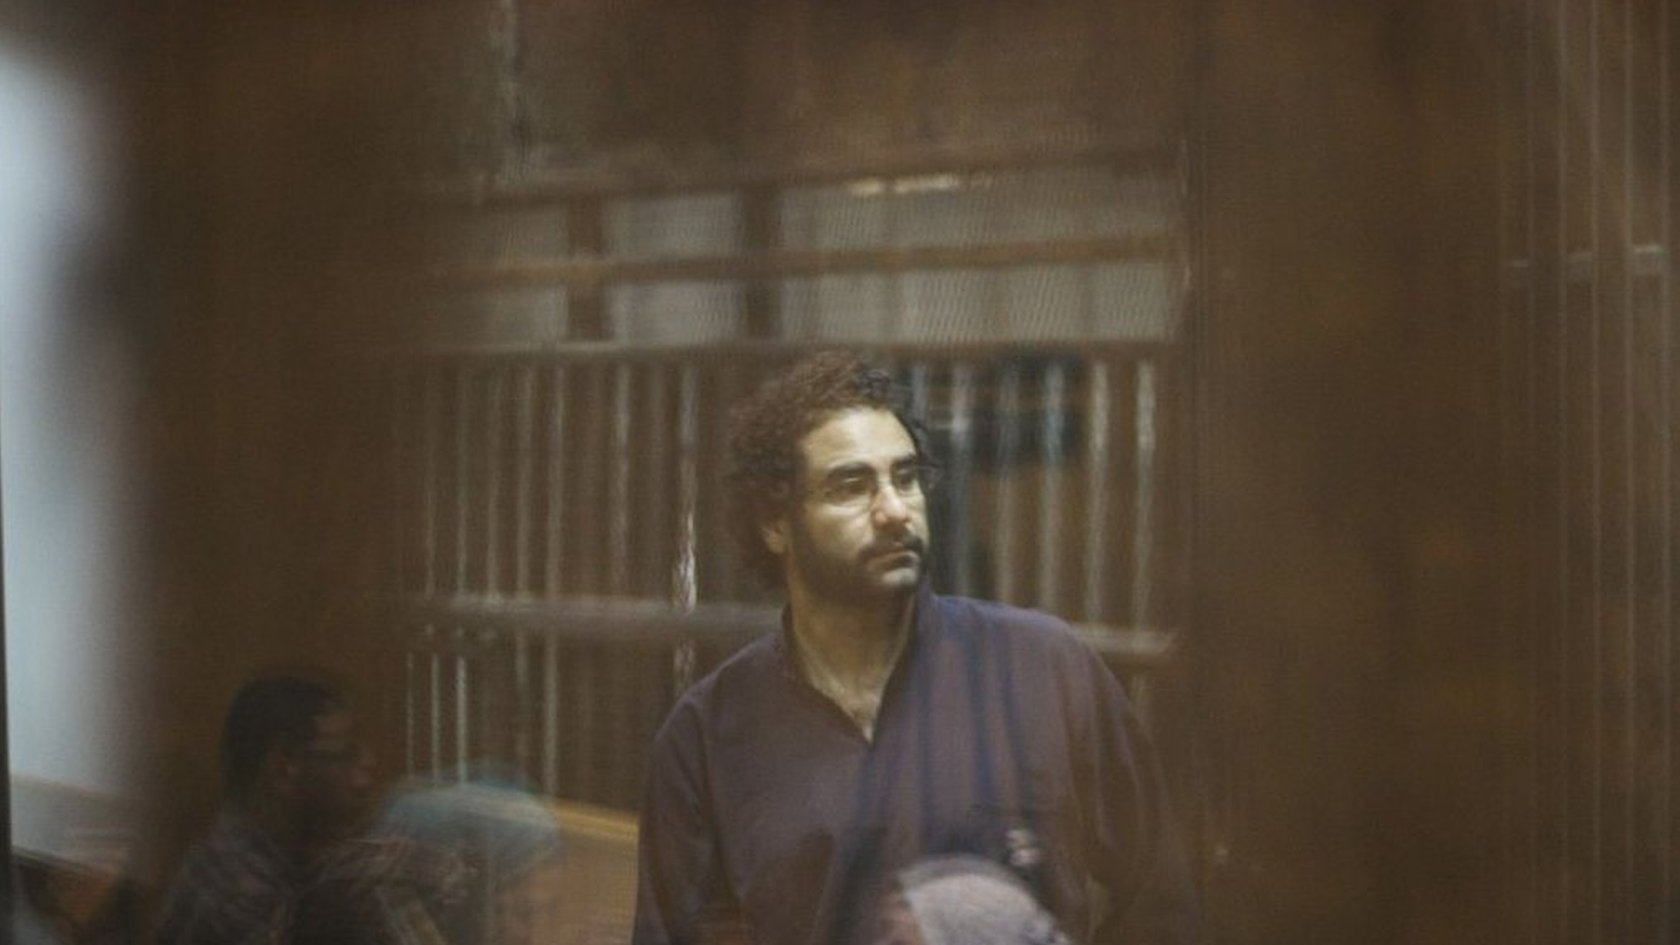 "اللقاء الأول" لعلاء عبد الفتاح بعد الإفراج عنه في مصر، ومحاولات ماي المستميتة لتمرير "نصف" اتفاقها مع الاتحاد الأوروبي - BBC Arabic